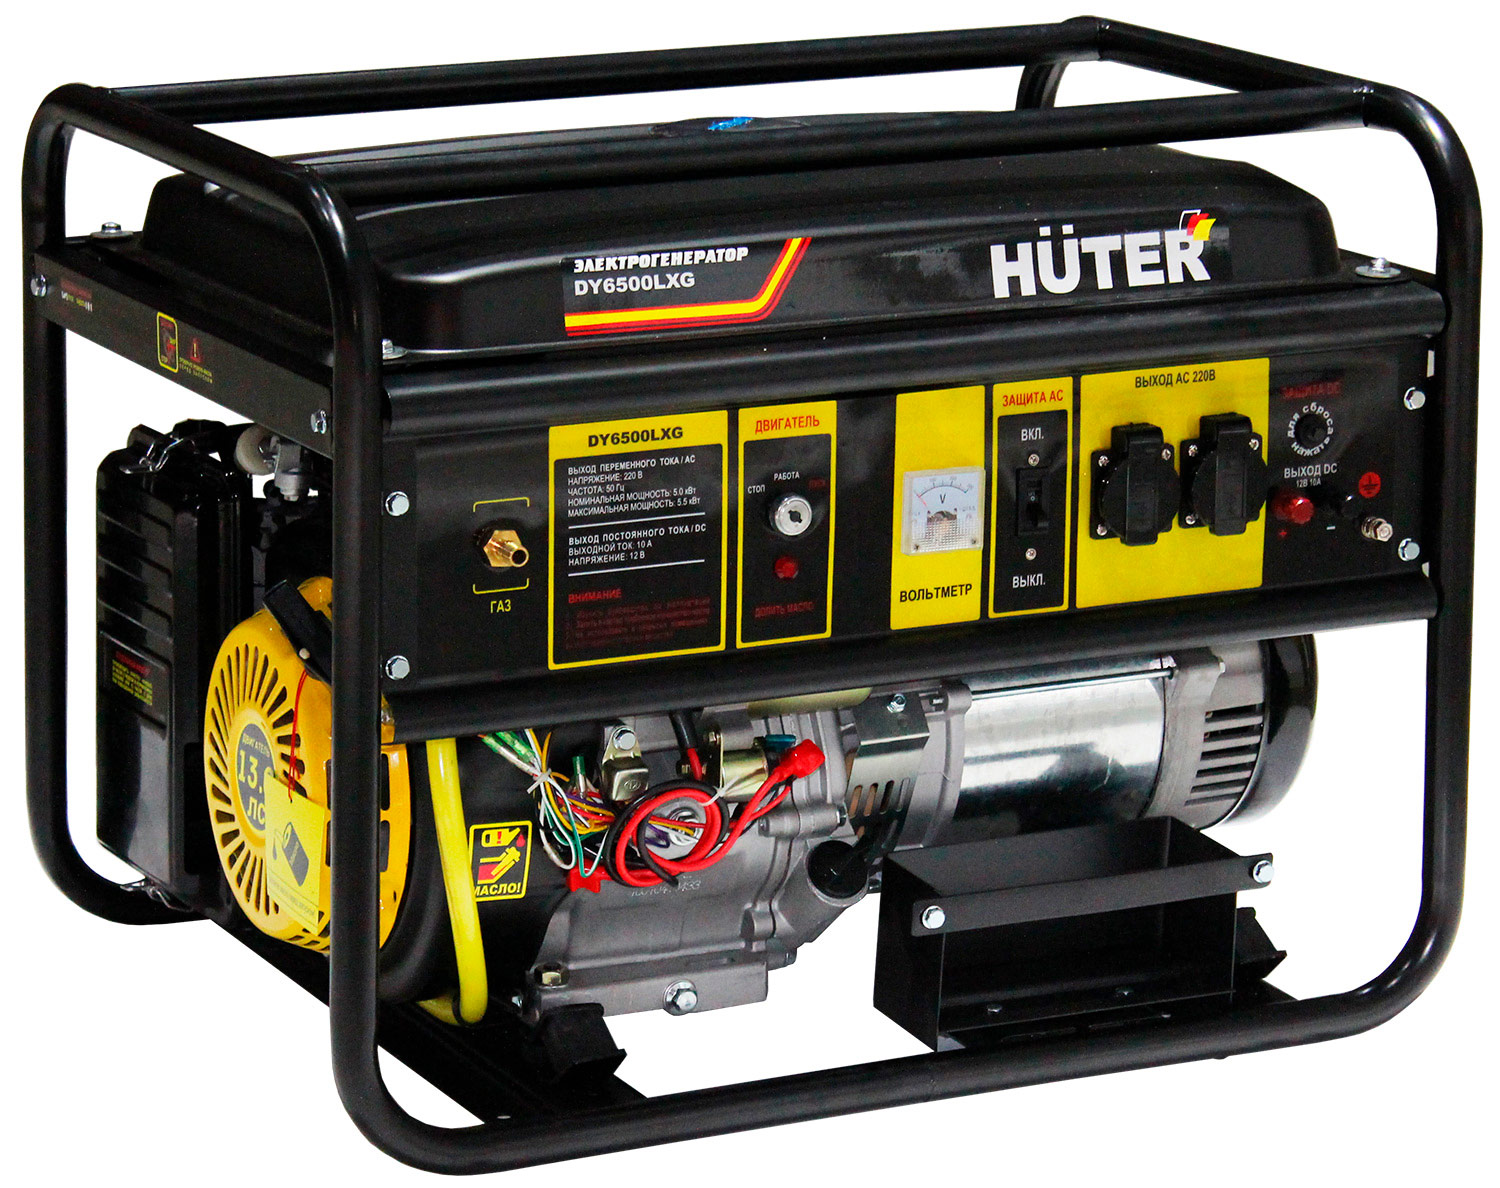 электрический генератор и электростанция huter ht 950 a Электрический генератор и электростанция Huter DY6500LXG 64/1/32